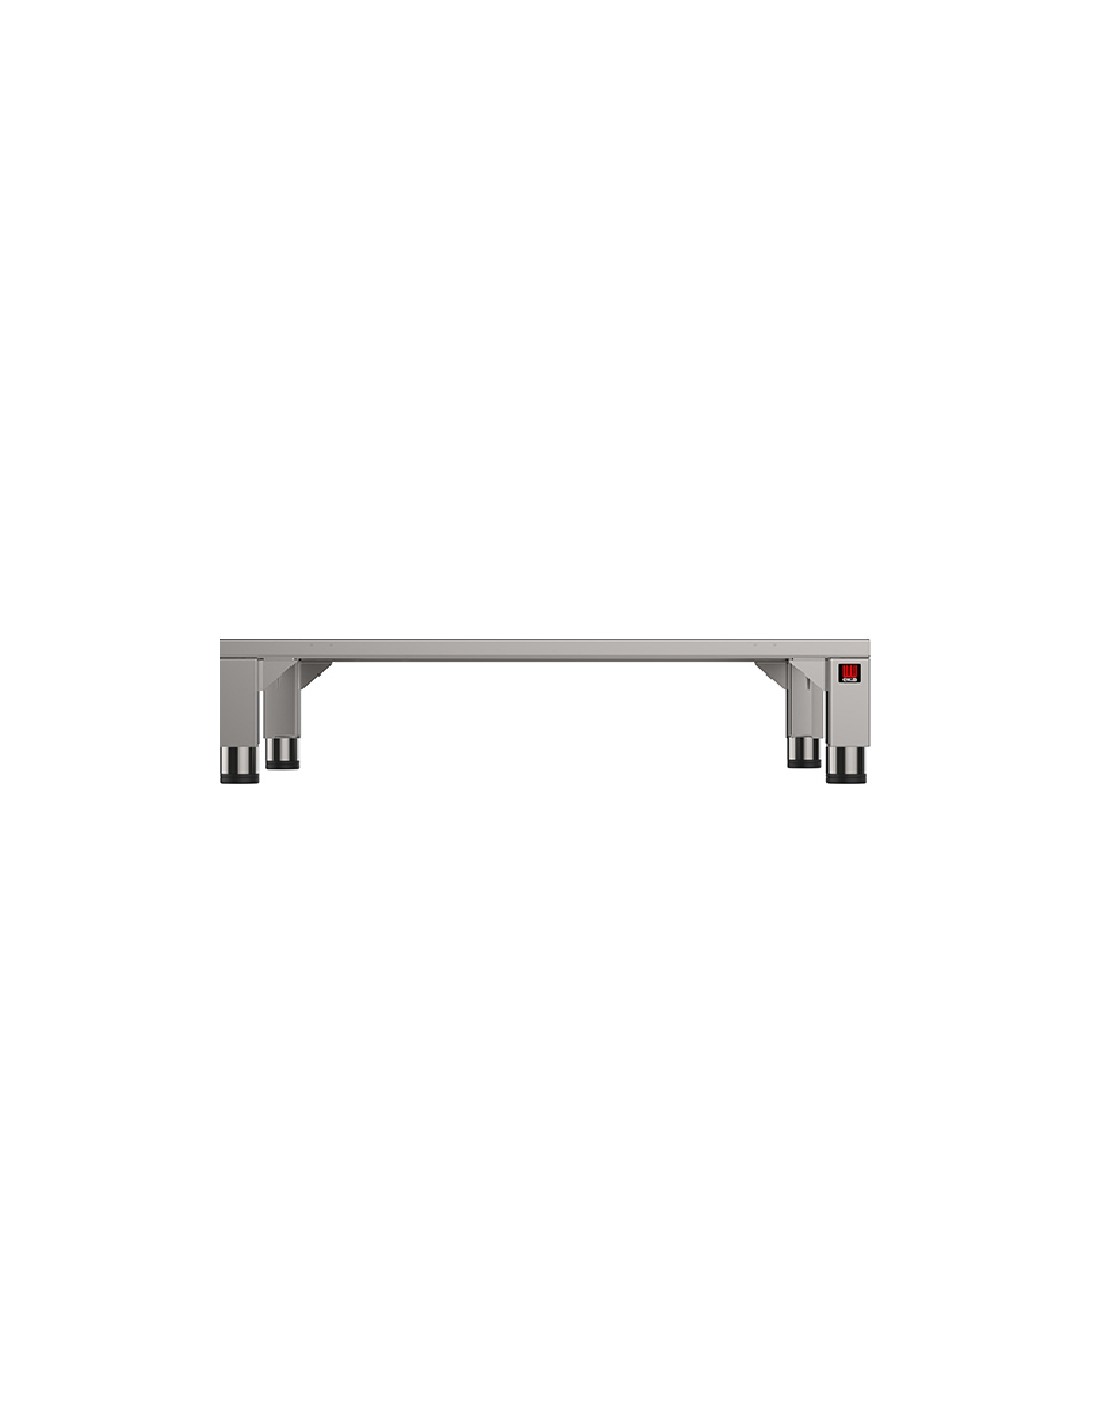 Tavolo fisso - Acciaio inox AISI 430 - Per forni 4/6/10 teglie - Per sovrapposizione forni - Dimensioni cm 85 x 78.7 x22h